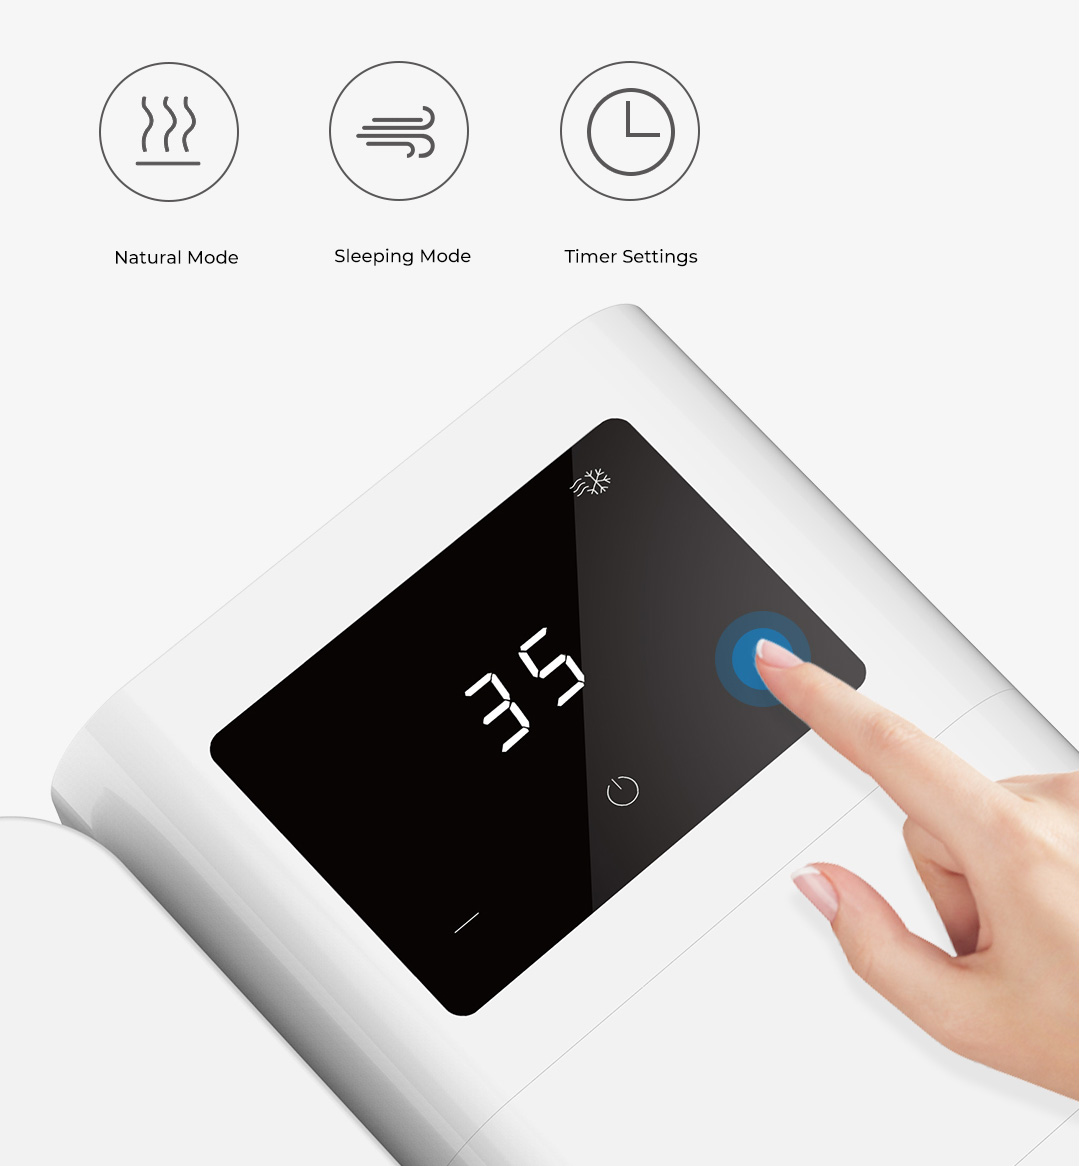 Xiaomi Microhoo Portable Mini Air Conditioner